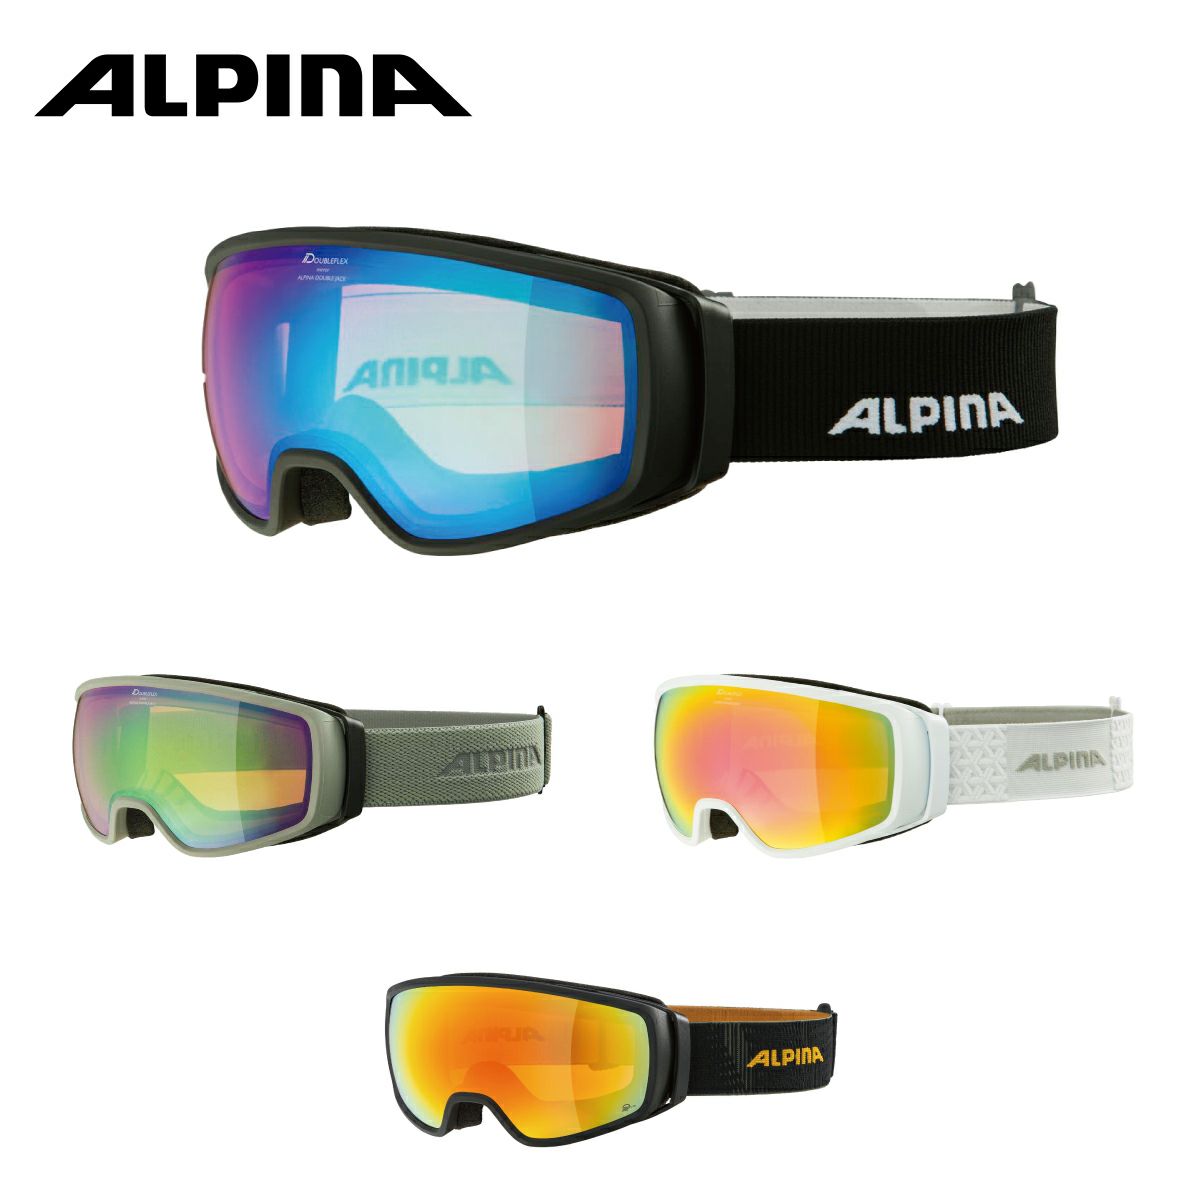 ALPINA(アルピナ) スキースノーボードゴーグル ユニセックス コンパクトタイプ 偏光ミラーレンズ メガネ使用可 ESTETICA QH